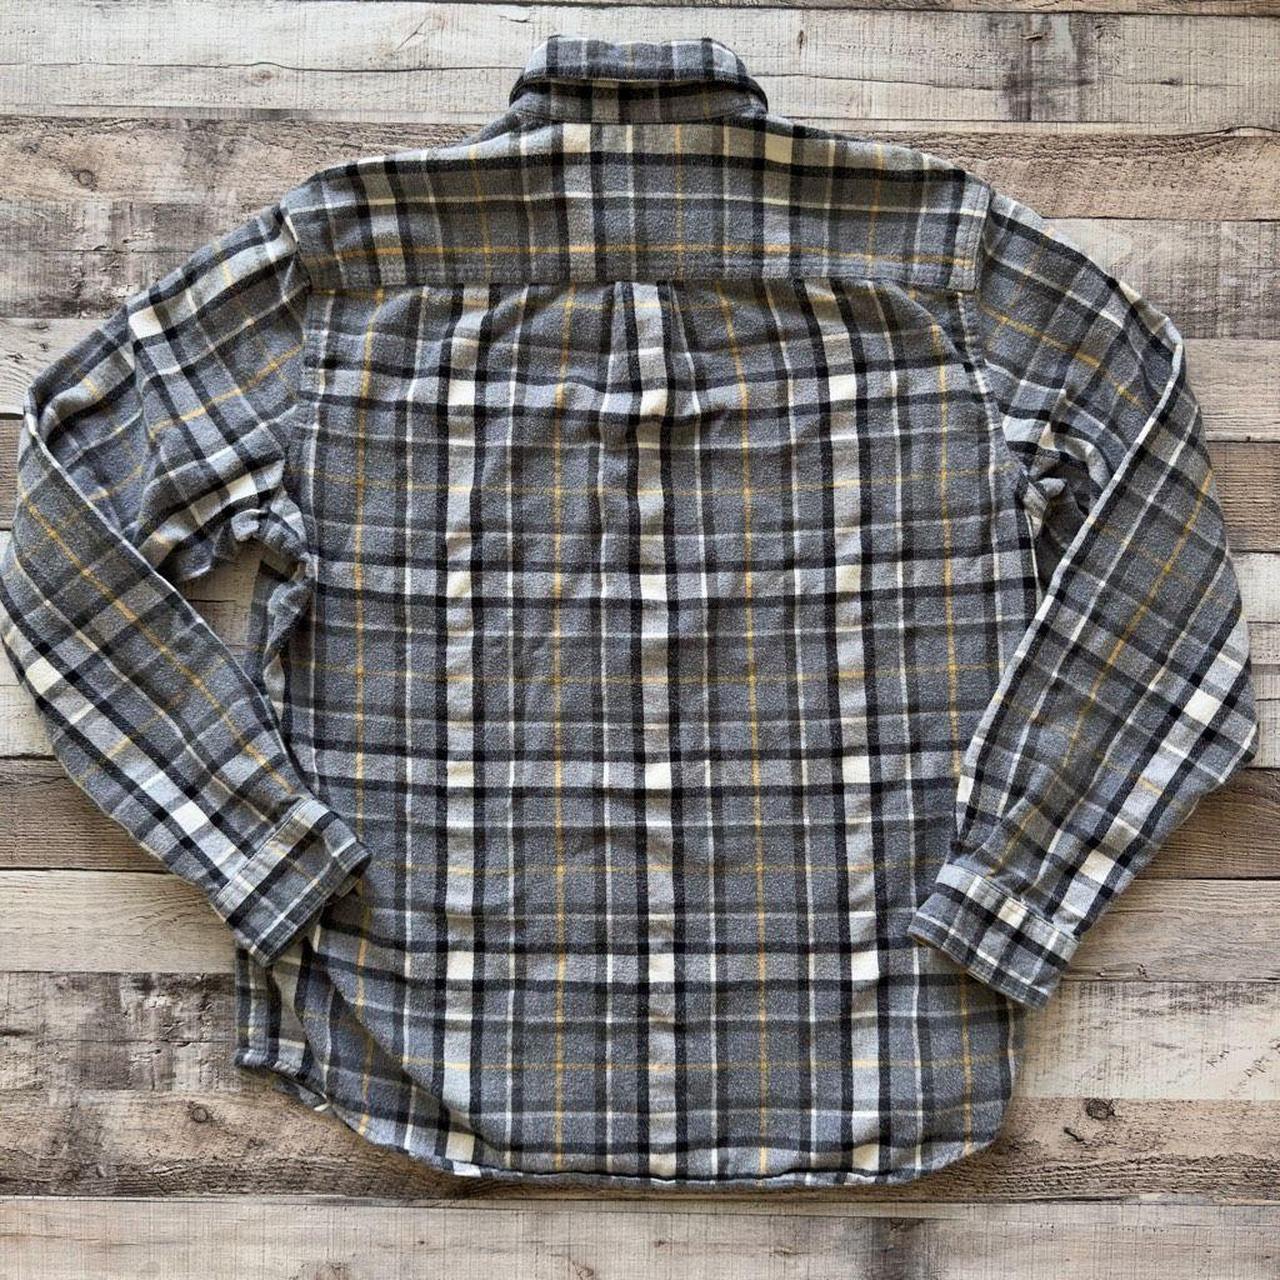 L.L.Bean Men's Scotch Plaid Flannel Shirt